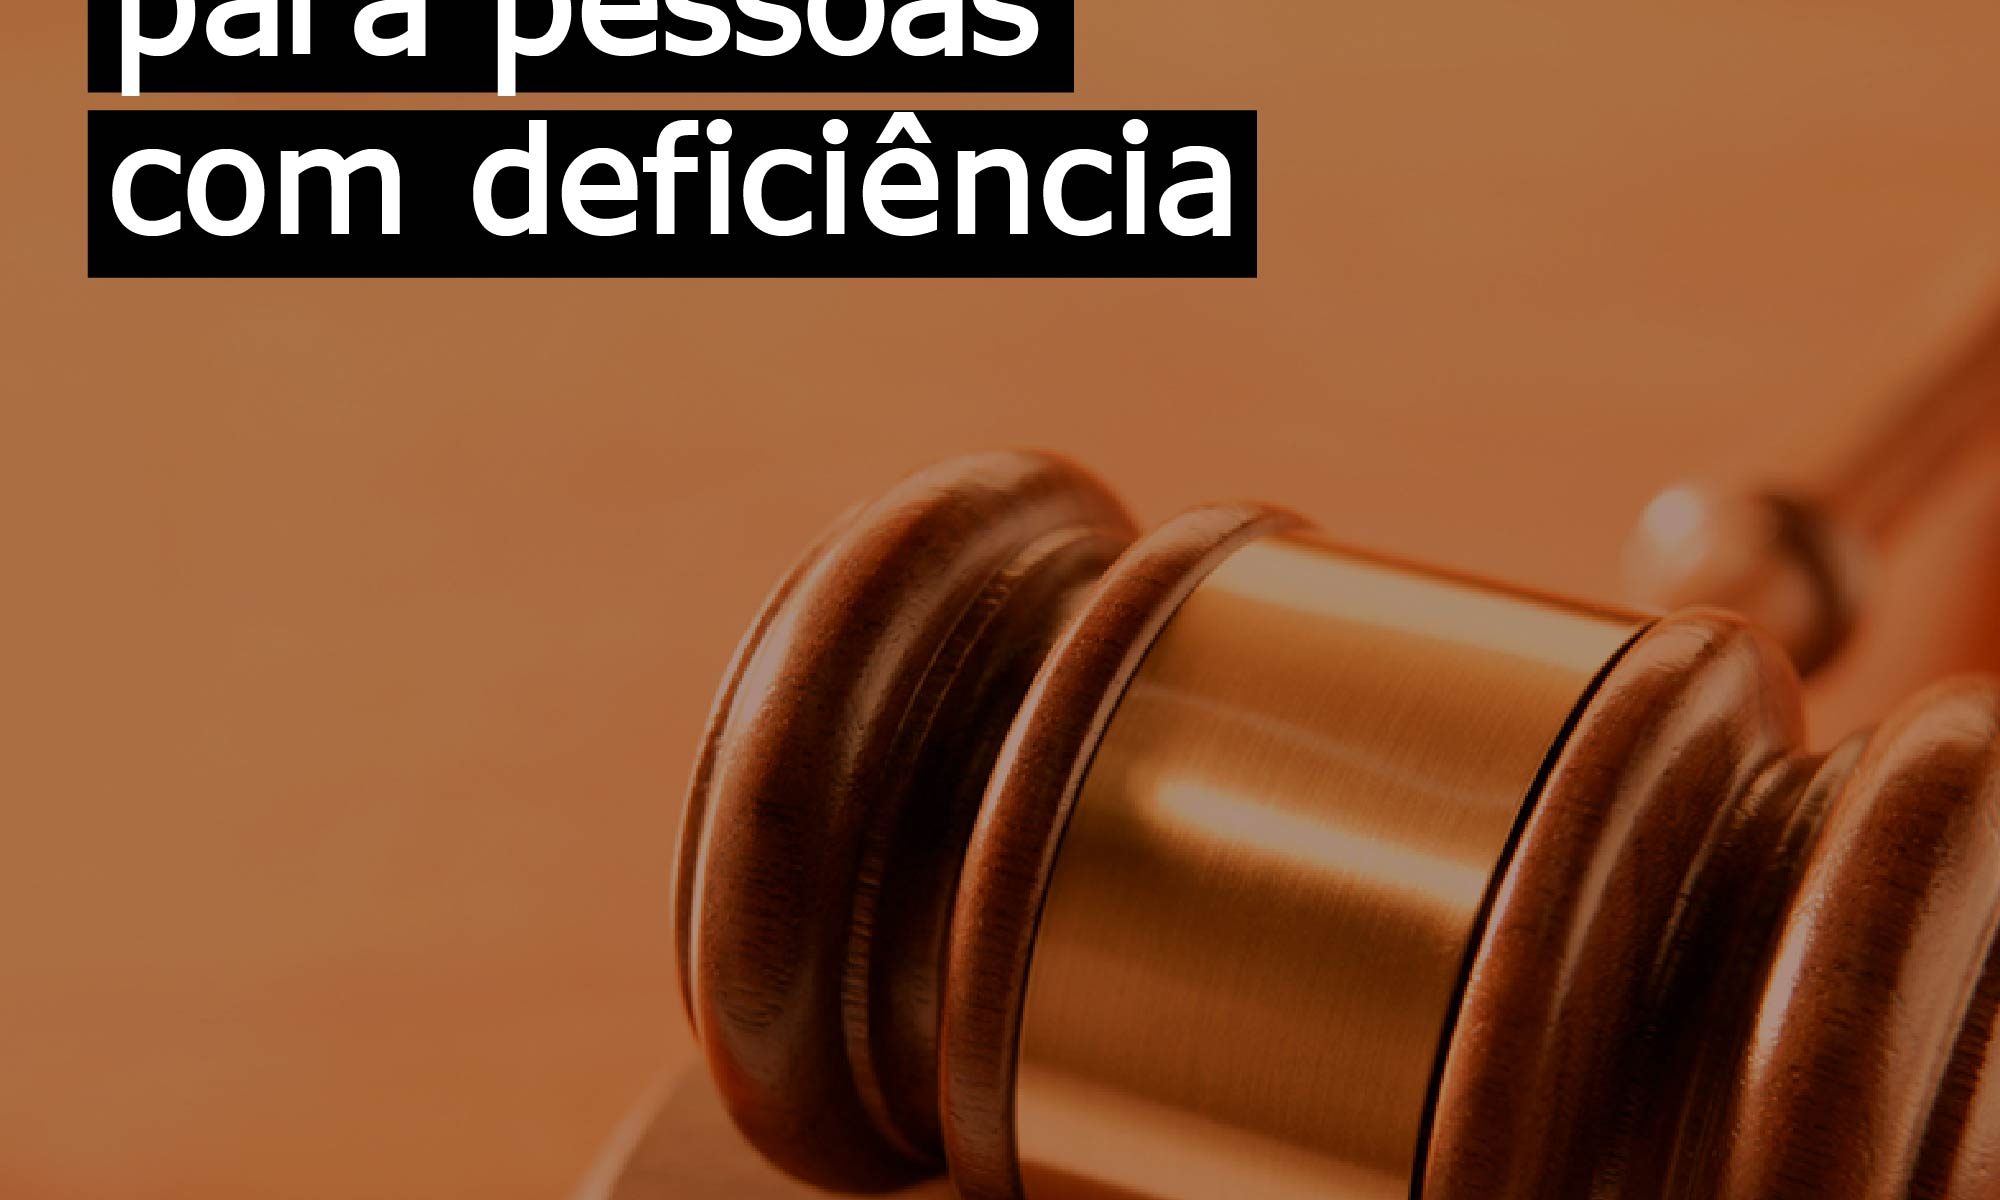 imagem em tons escurros, há um martelo de justica e está escrito: "Passe livre para pessoas com deficiência" #direitospcd e há a logo da retina brasil